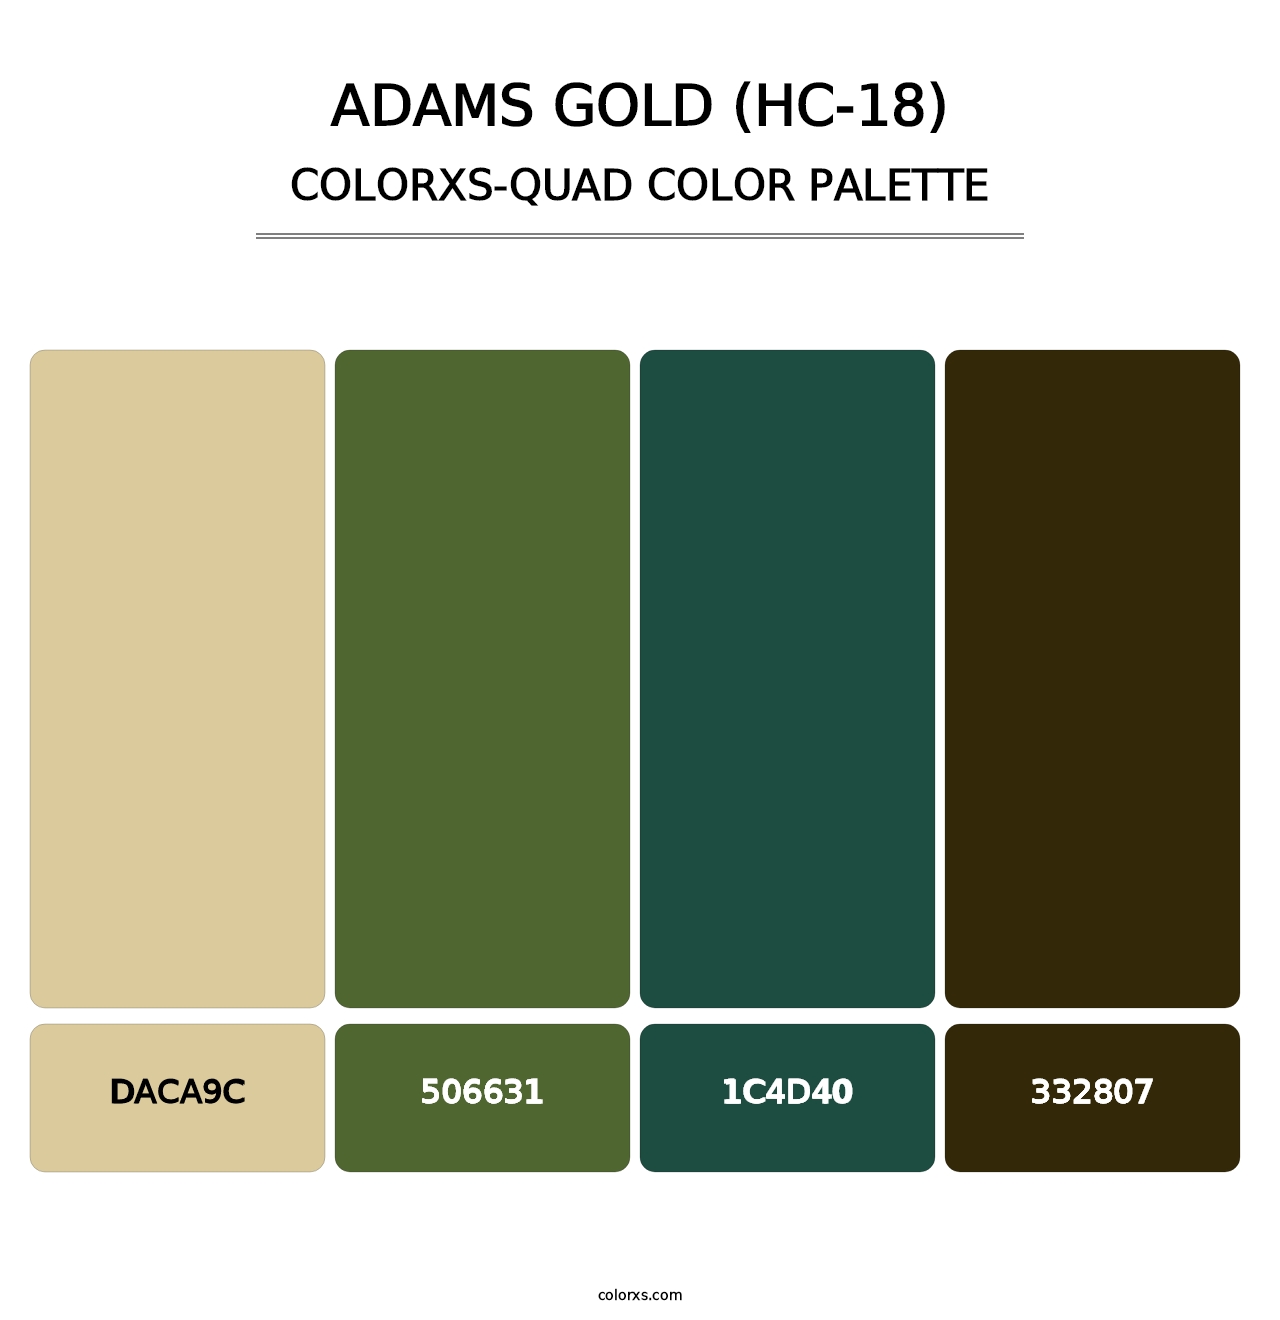 Adams Gold (HC-18) - Colorxs Quad Palette